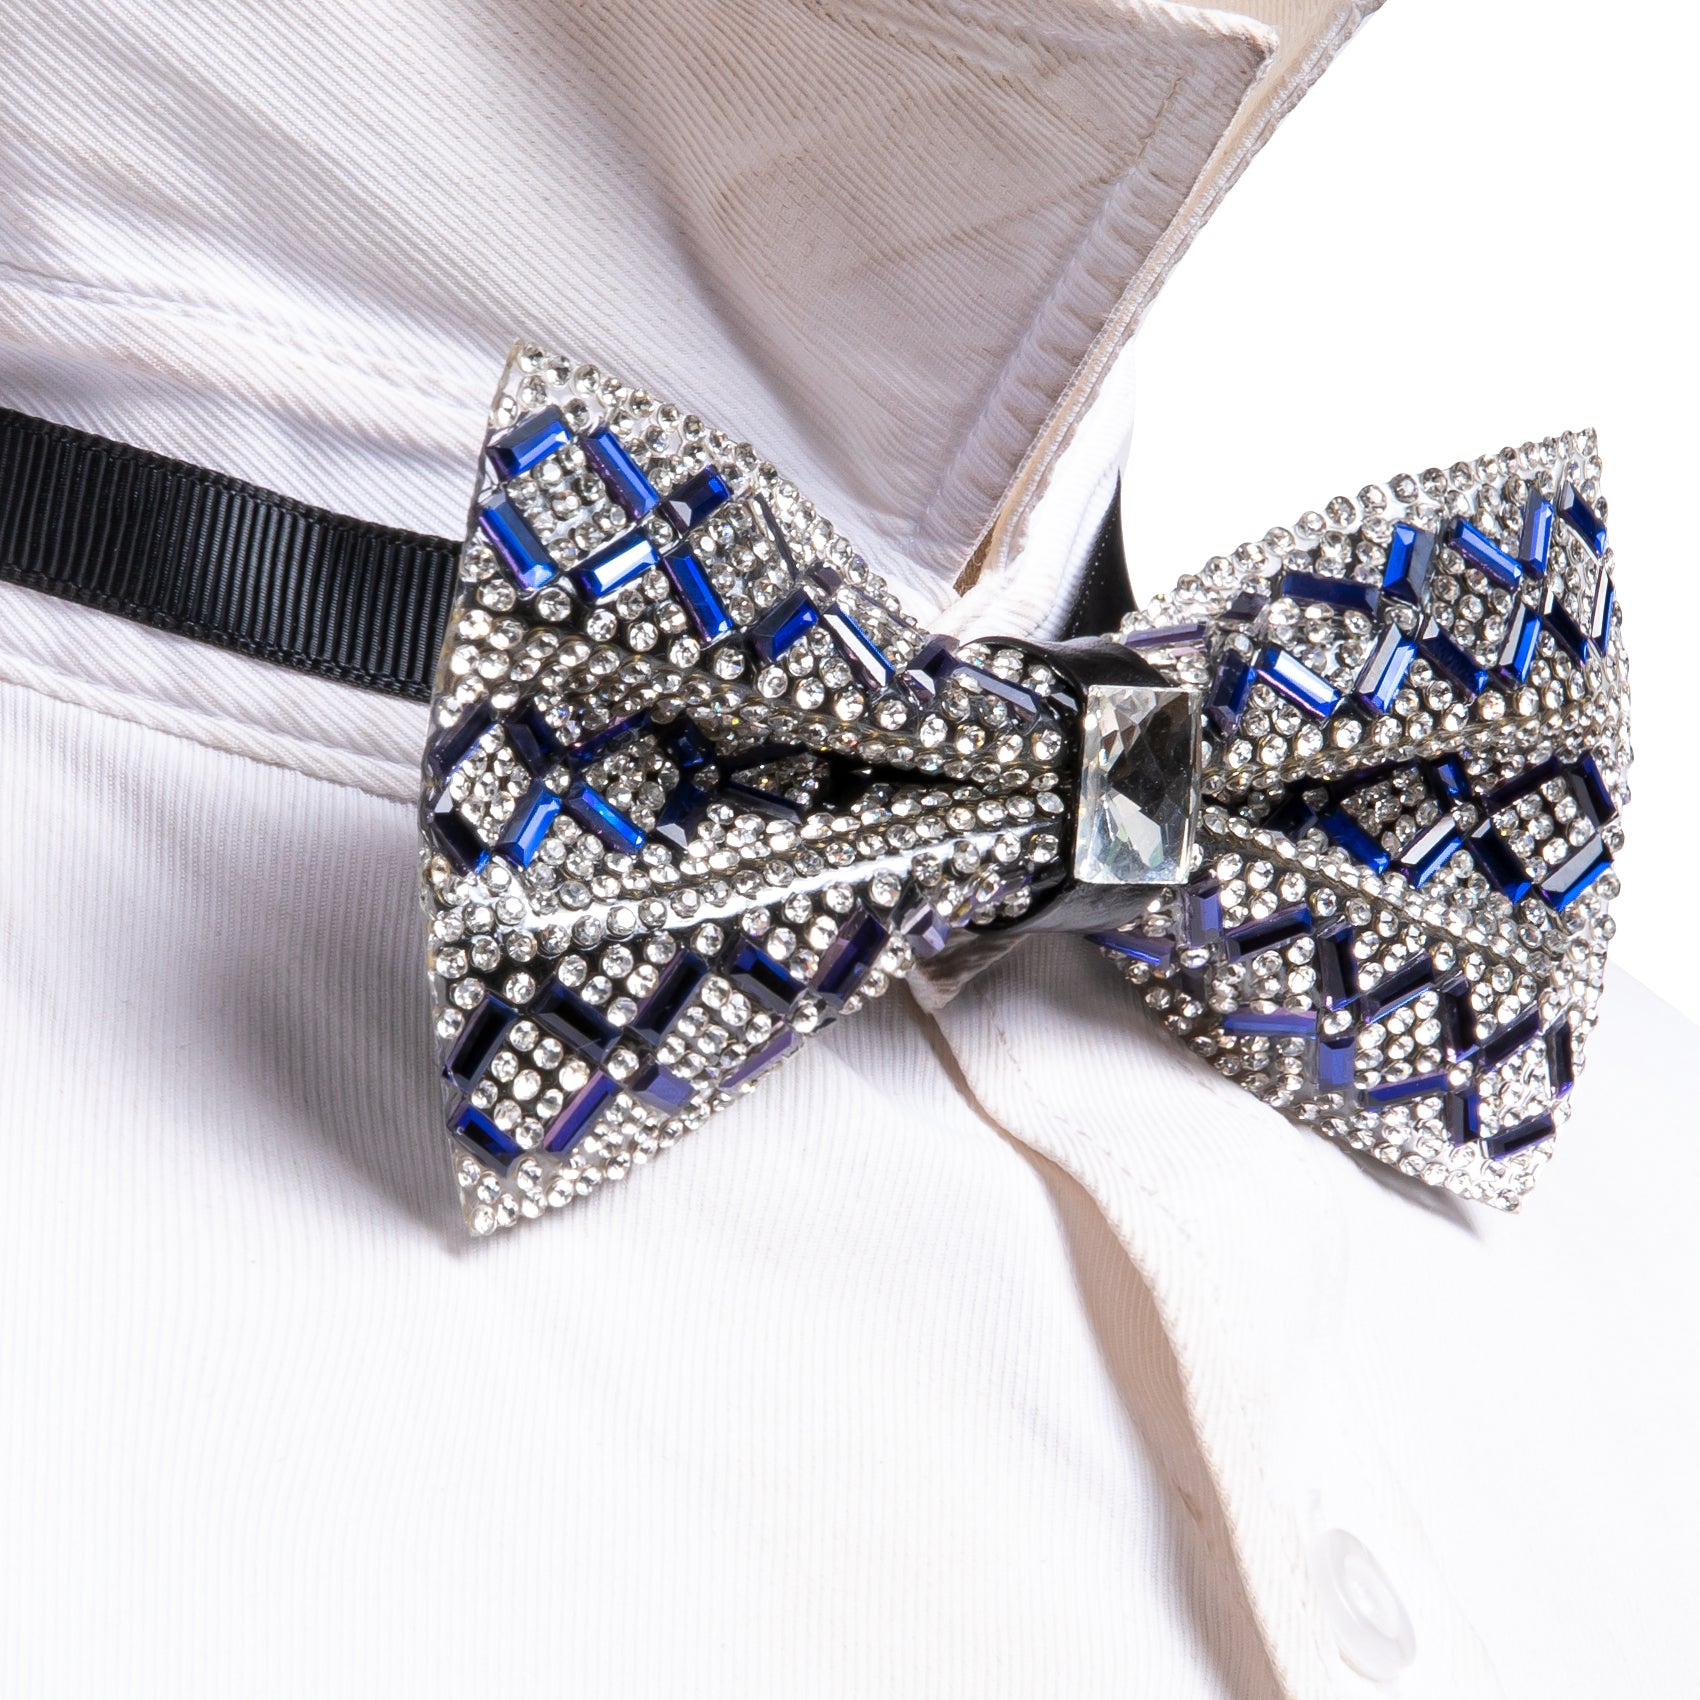 Shining Blue White Plaid Rhinestones Pre-tied Bowties Fashion For Wedding Party